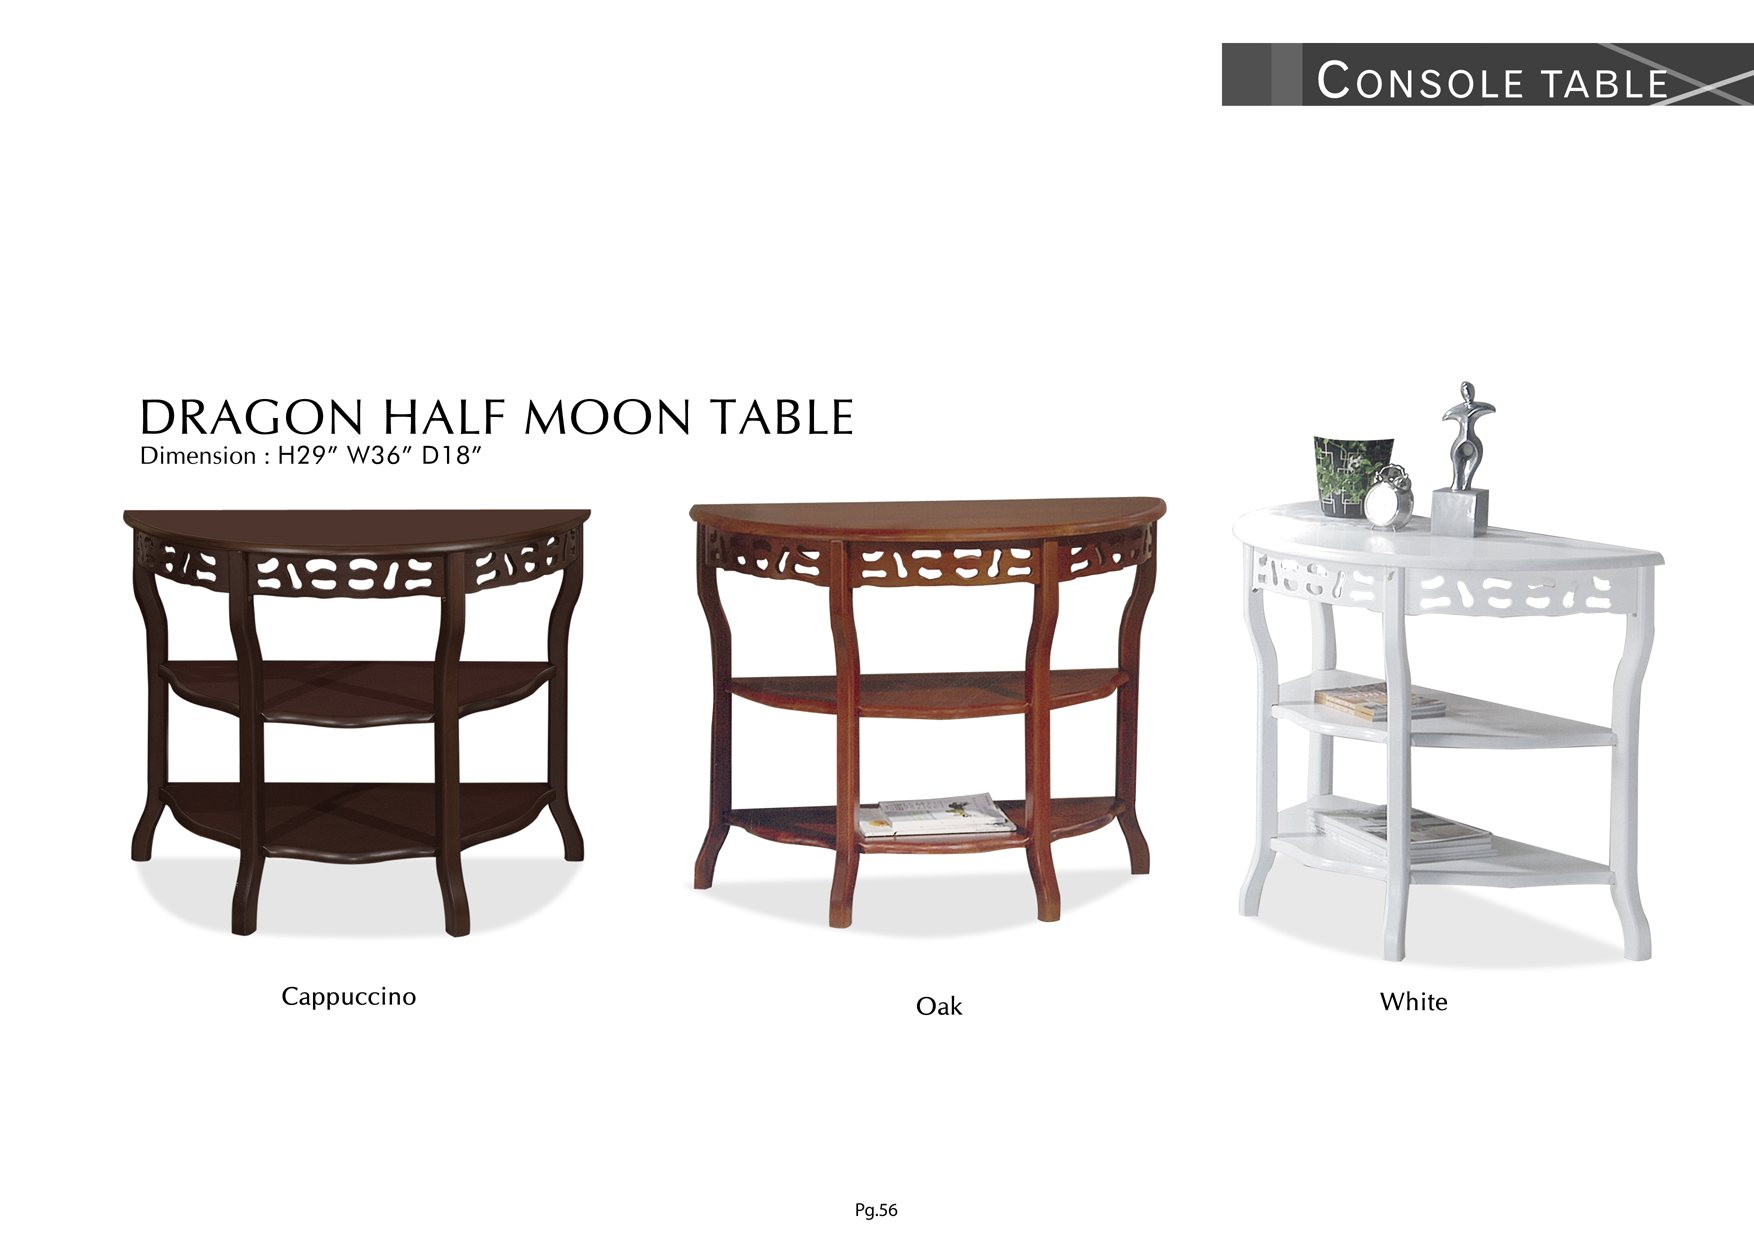 Product: PG56. DRAGON HALF MOON TABLE